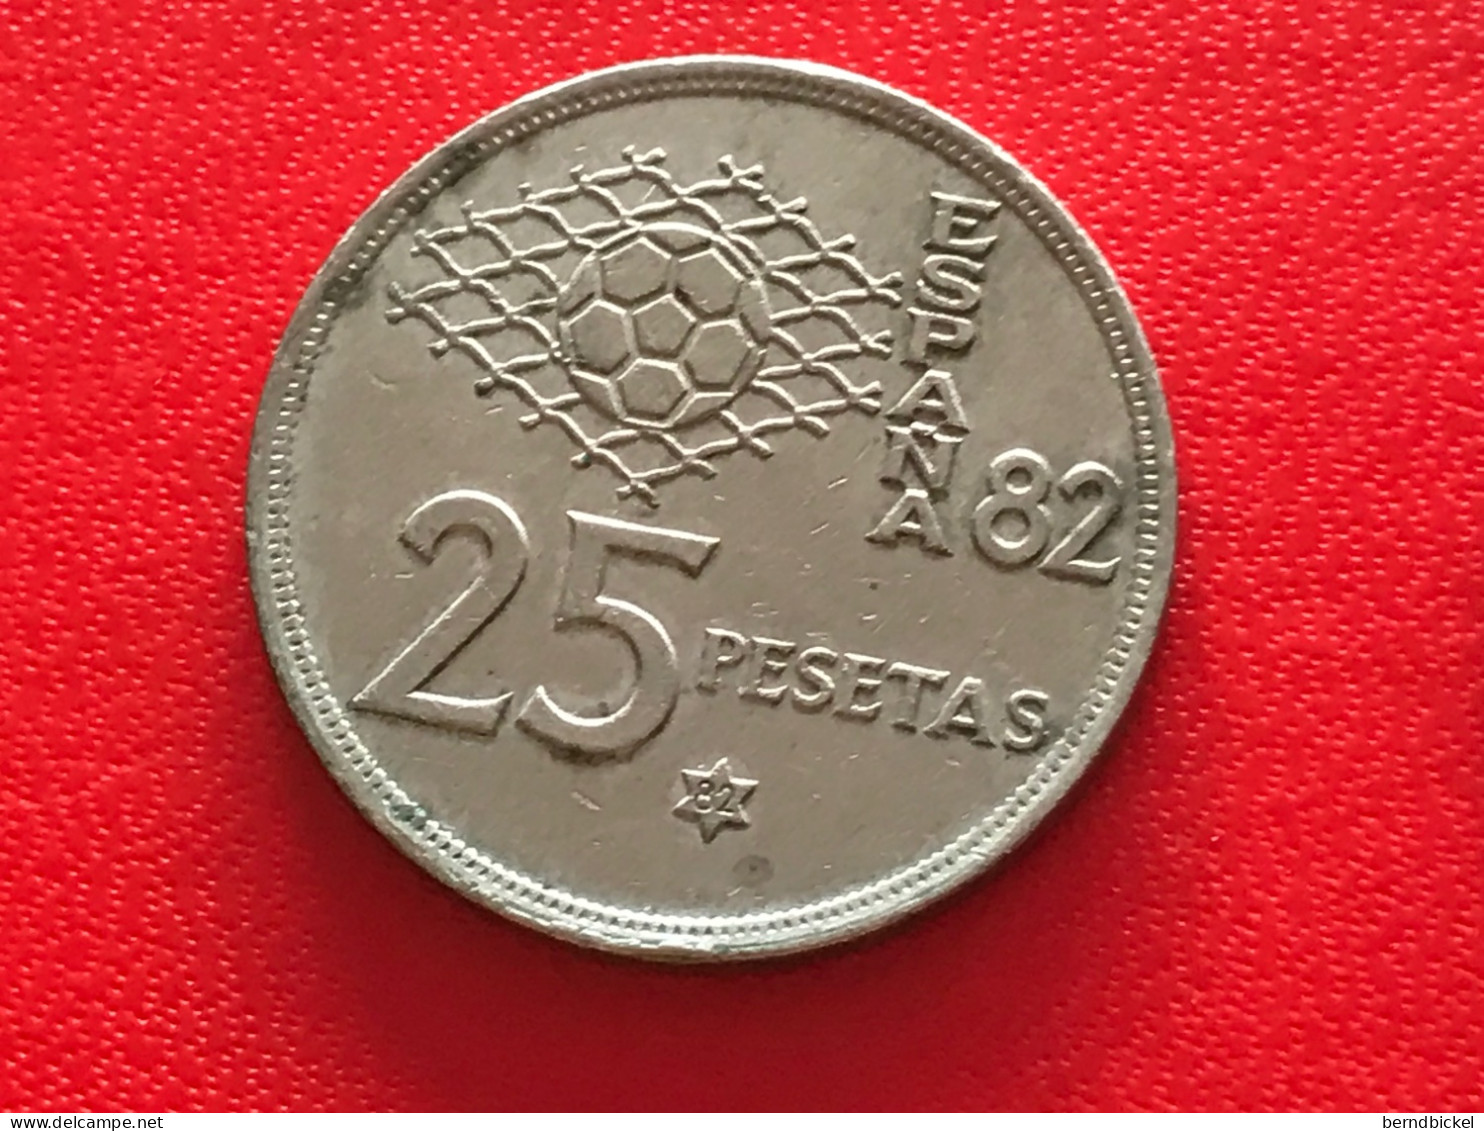 Münze Münzen Umlaufmünze Spanien 25 Pesetas 1980 Im Stern 82 - 25 Pesetas